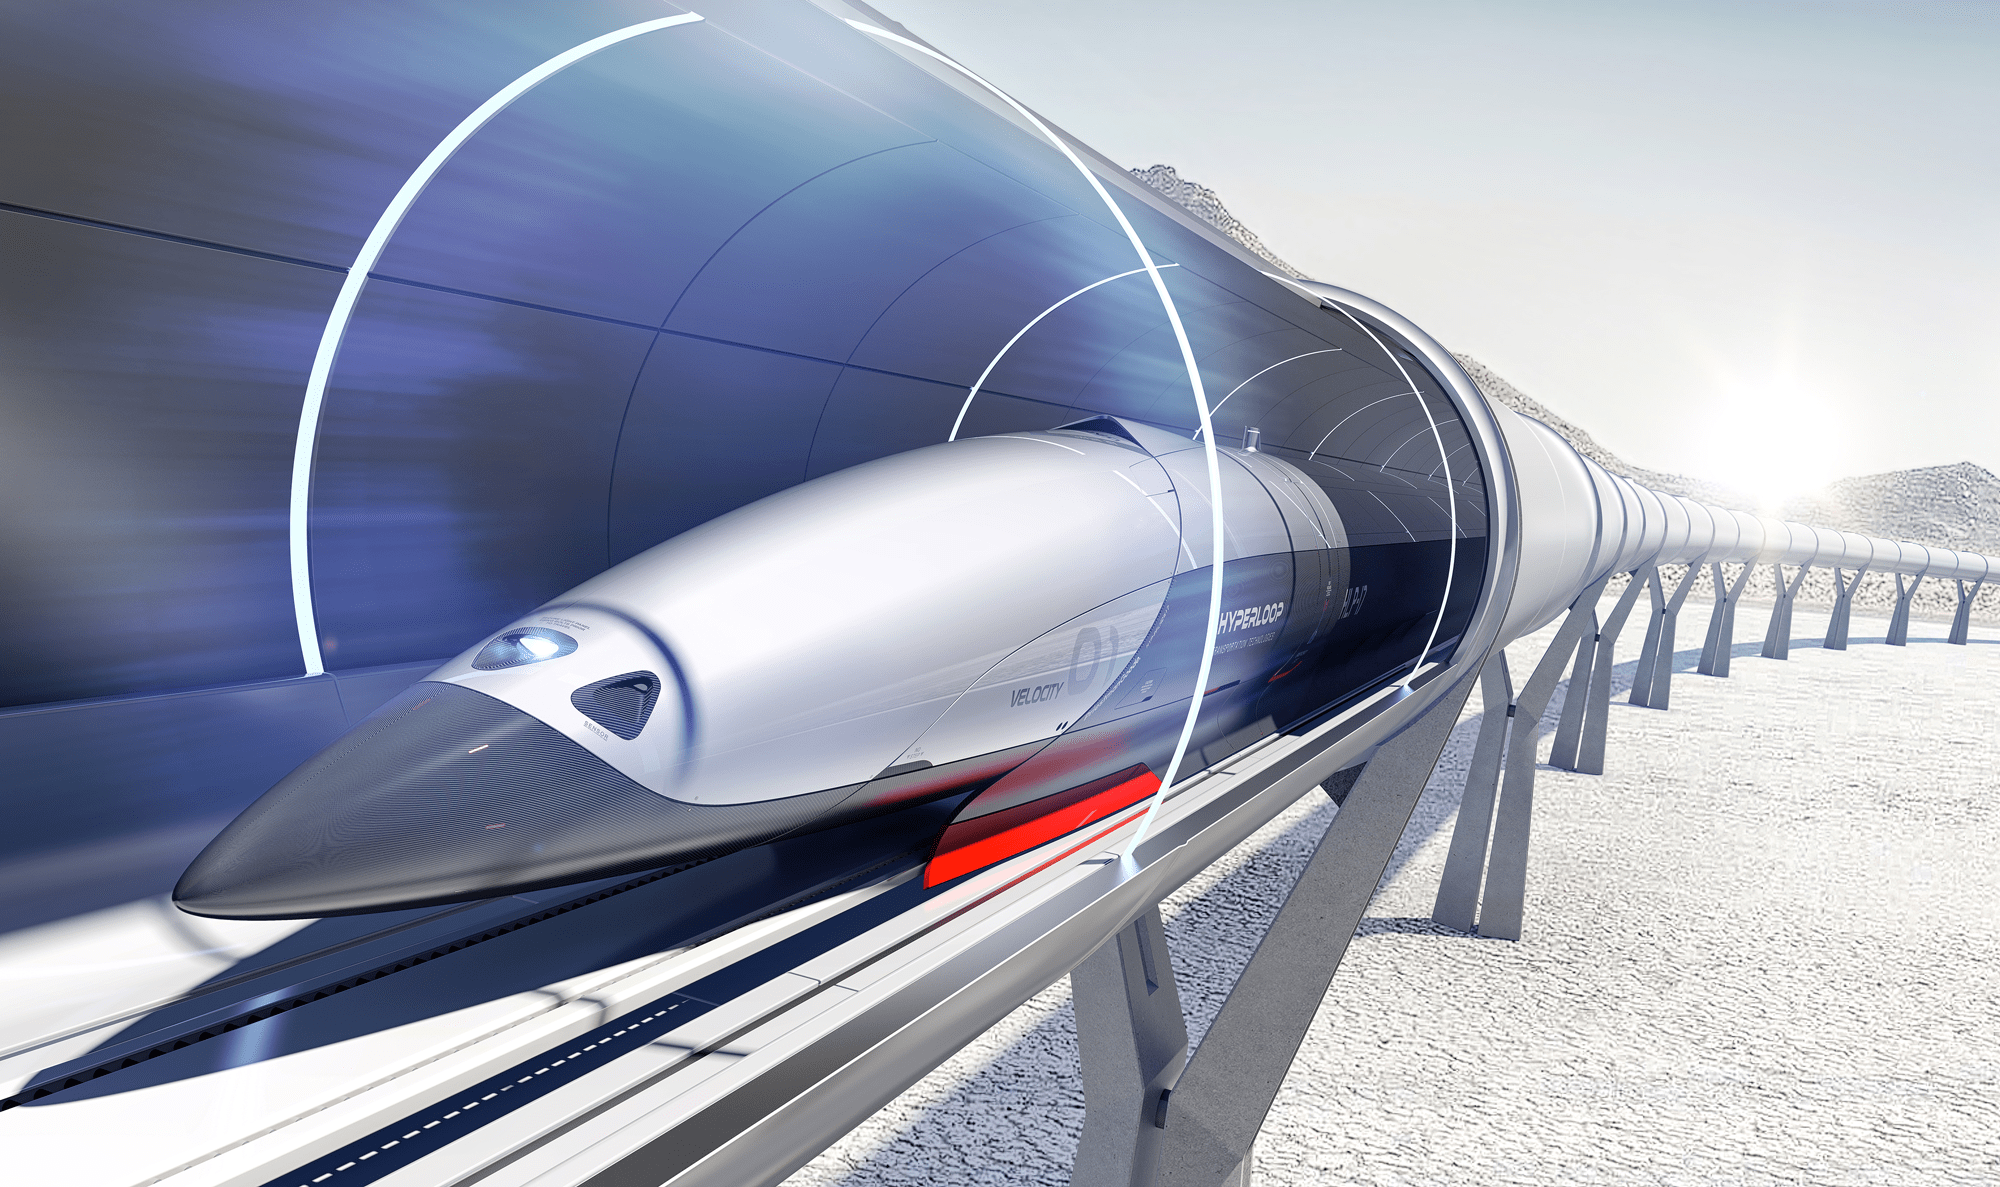 Первая коммерческая линия высокоскоростной системы Hyperloop откроется в 2022 году